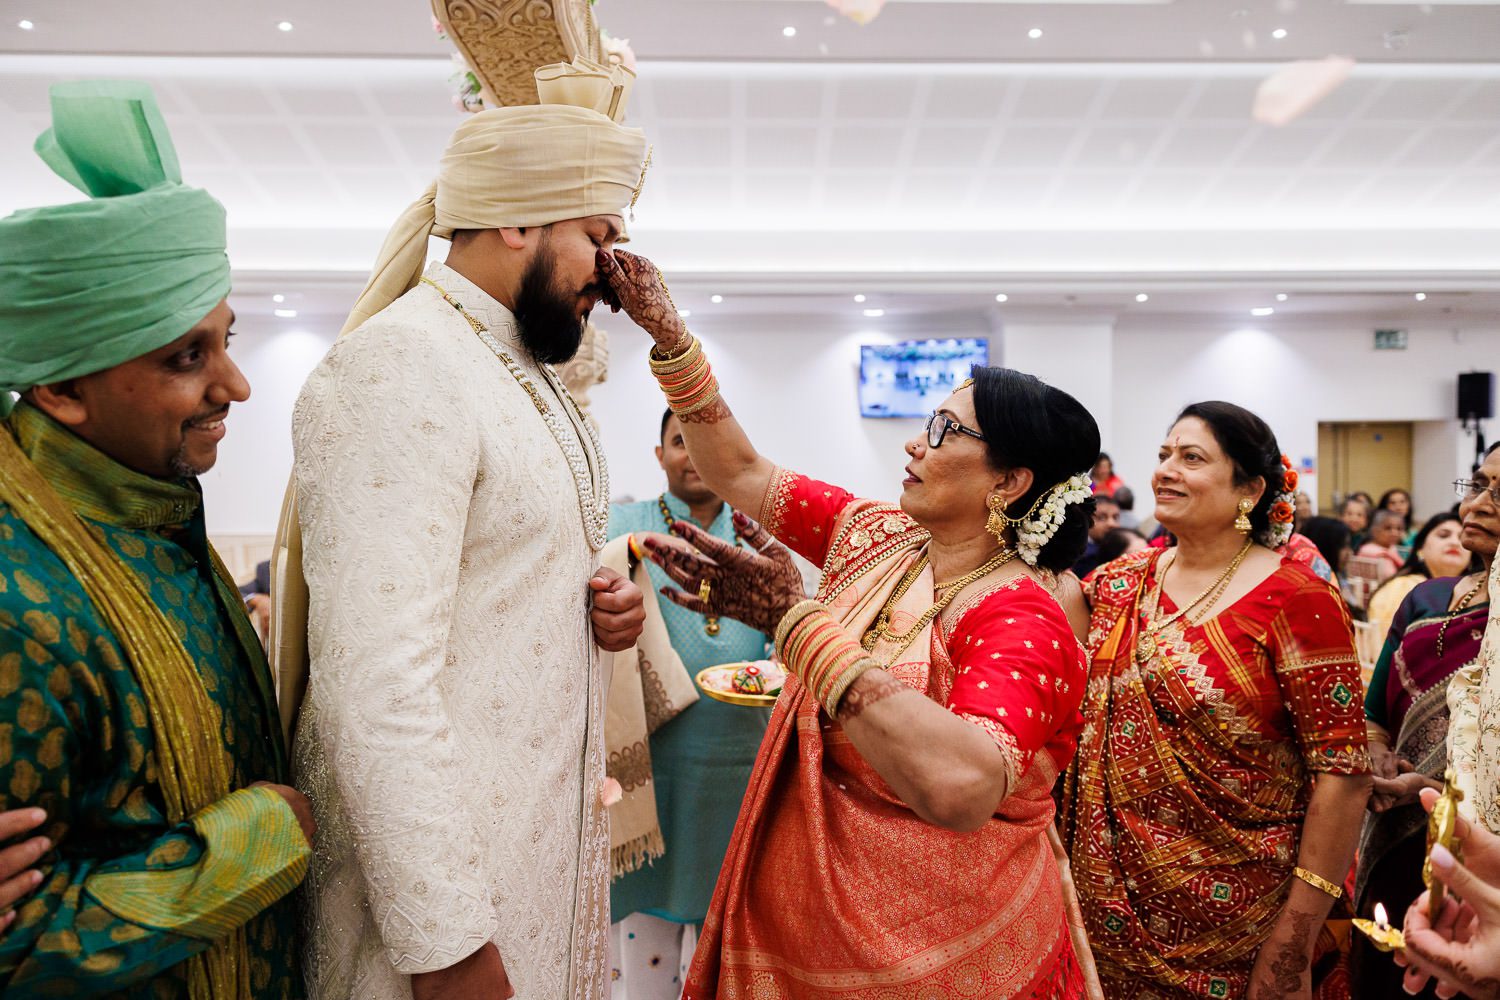 Hindu Gujarati wedding ritual